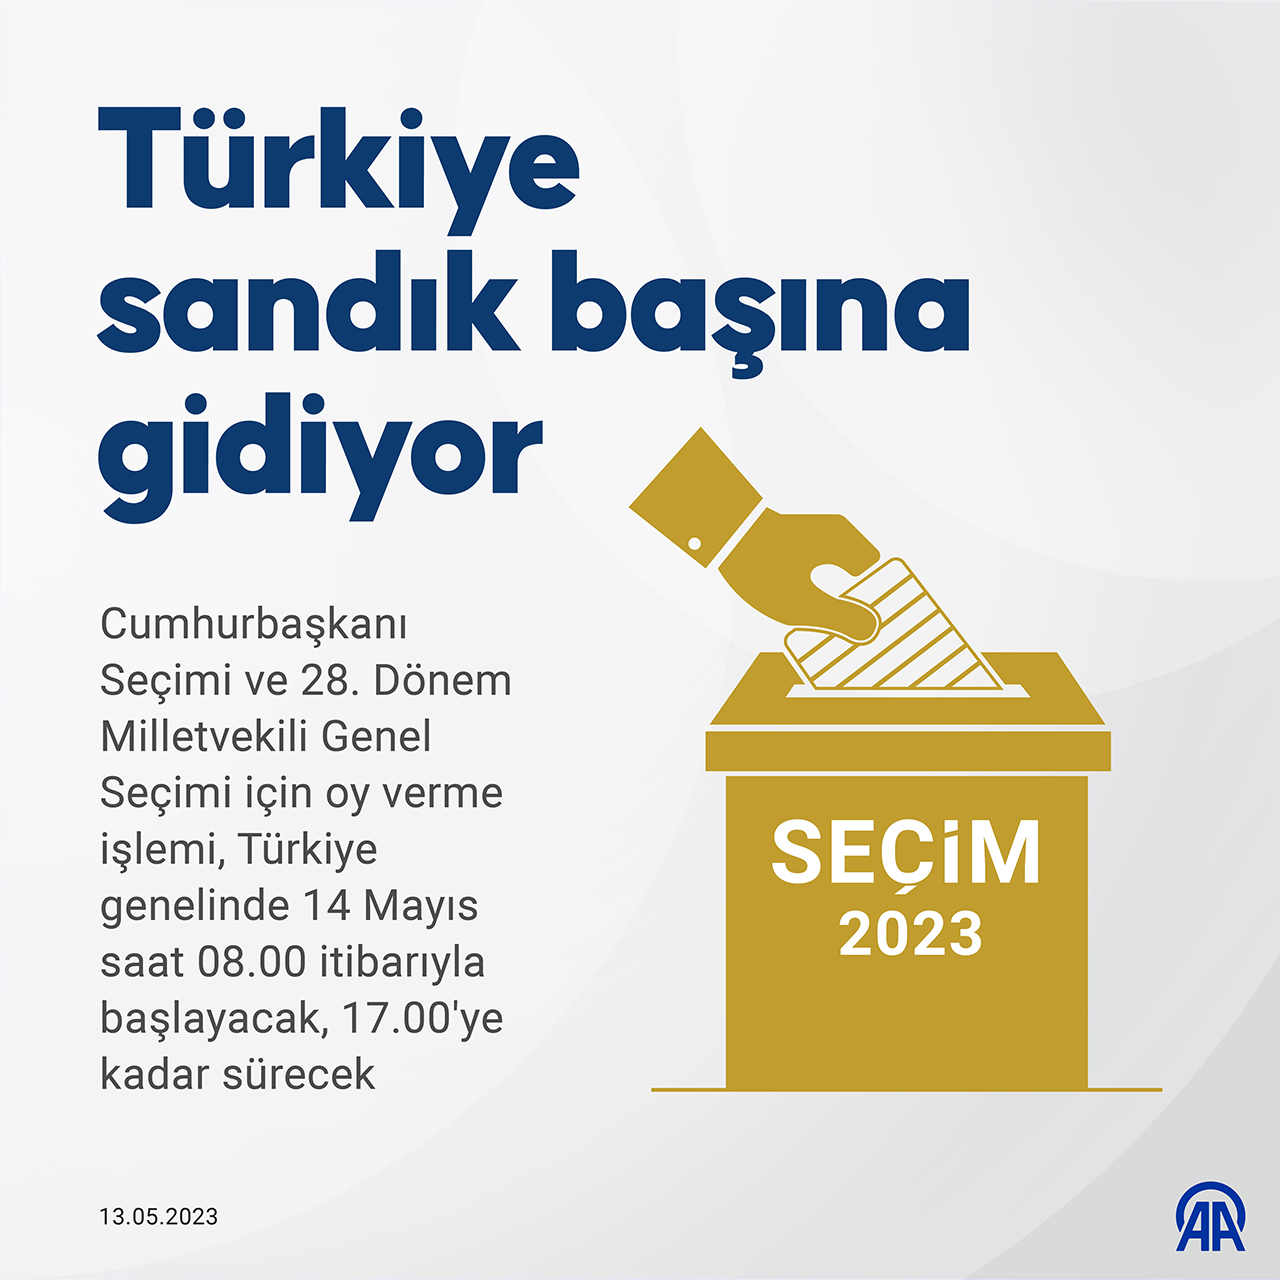 AA-20230513-31125173-31125168-TURKIYE_SANDIK_BASINA_GIDIYOR